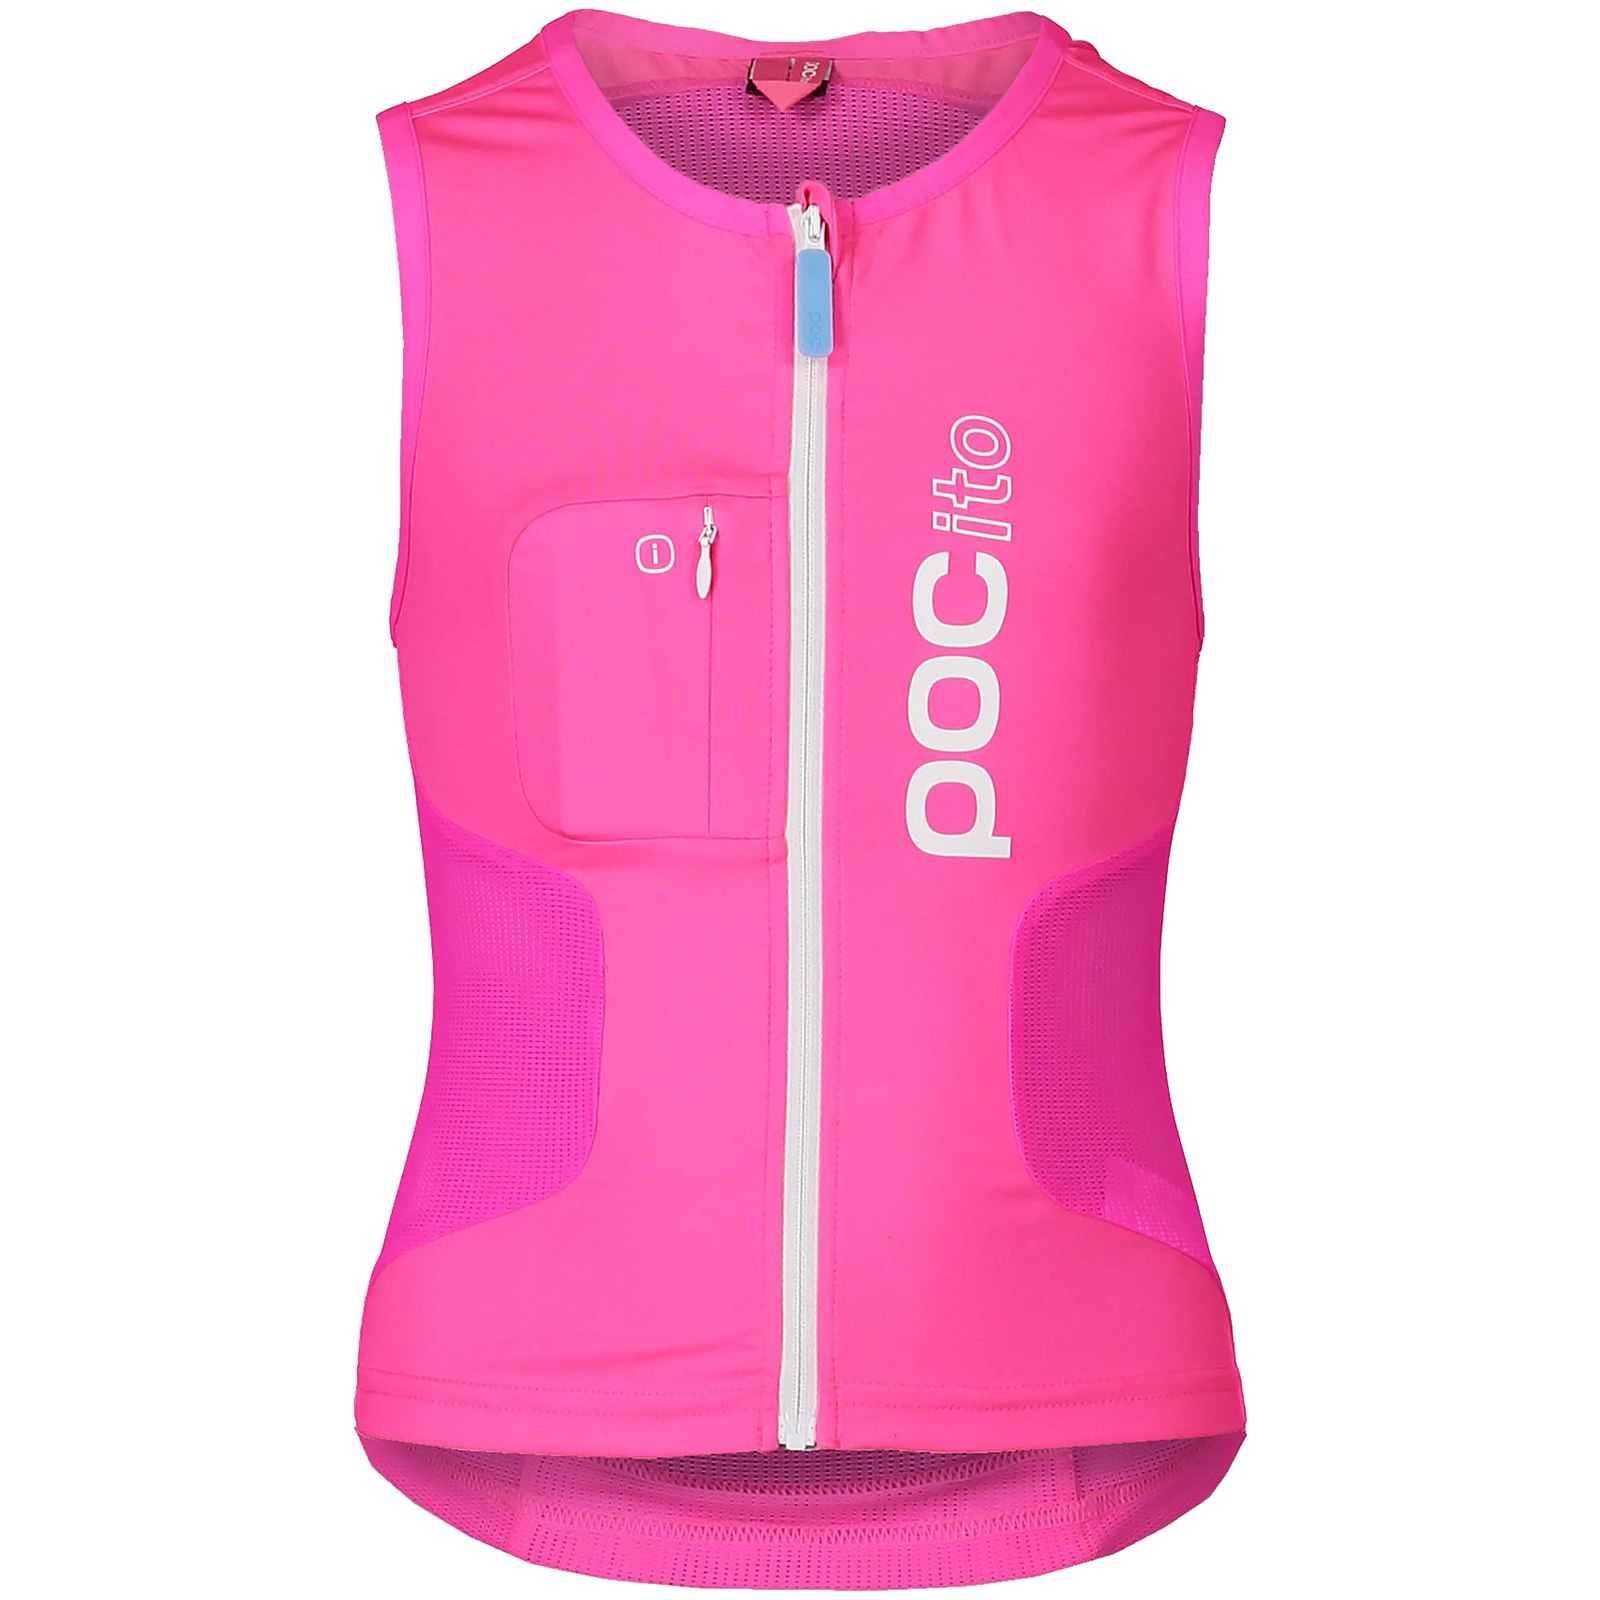 Produktbild von POC Pocito VPD Air Vest Protektorenweste Kinder - 9085 Fluorescent Pink